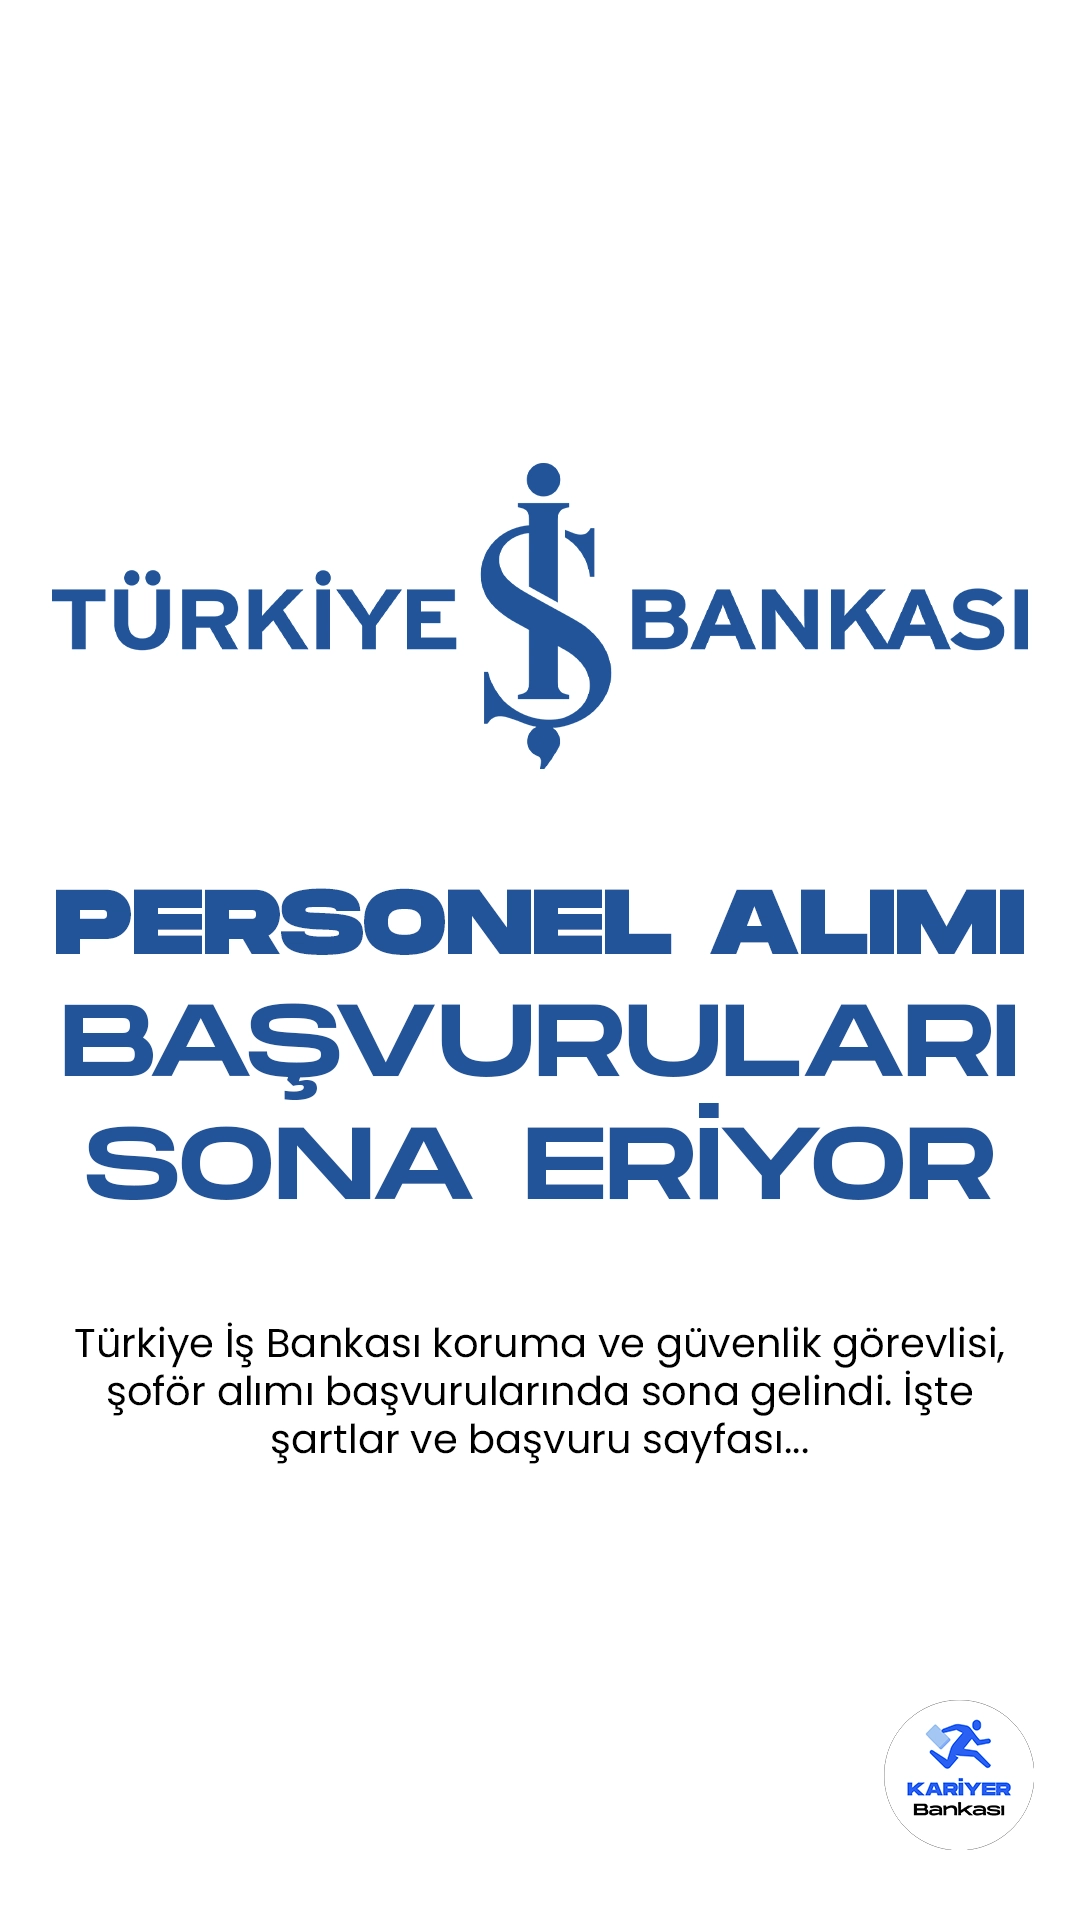 İş Bankası Güvenlik ve Şoför alımı başvuruları sona eriyor. Türkiye İş Bankası kariyer sayfası üzerinden yayımlanan duyurularda, İş Bankası şubelerinden görevlendirilmek üzere  özel güvenlik görevlisi ve şoför alımı yapılacağı aktarılırken, başvuruların 8 Aralık’ta sona ereceği kaydedildi. Başvuru yapacak adayların belirtilen şartları dikkatle incelemesi gerekmektedir.